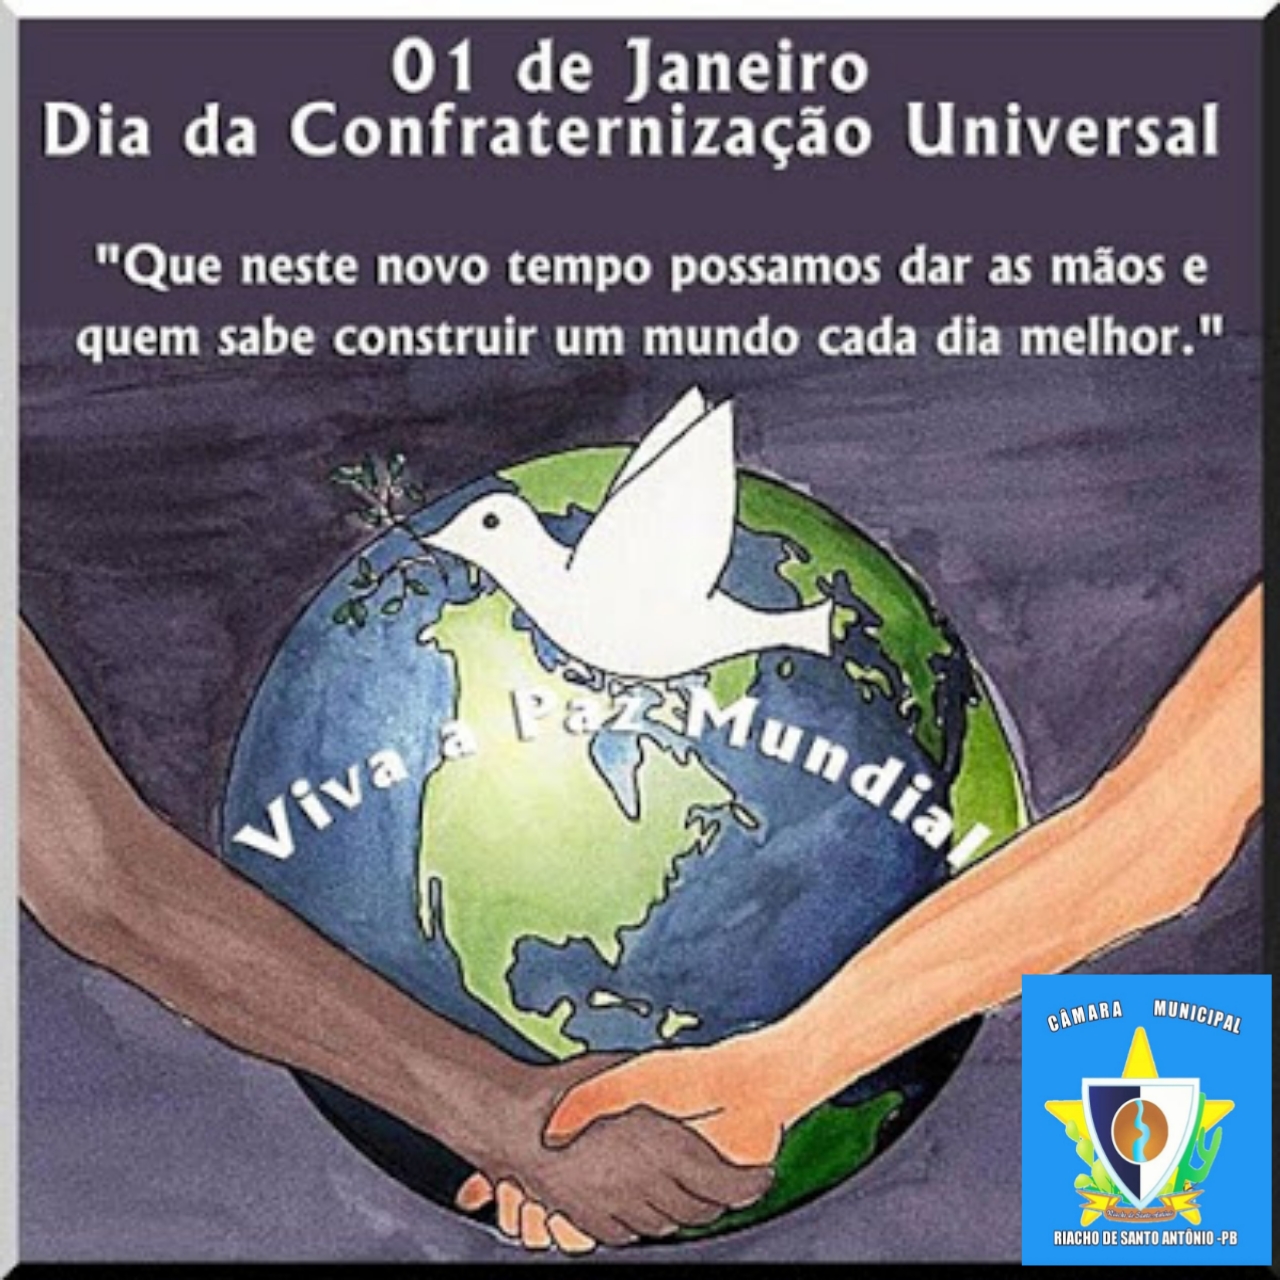 1 de Janeiro, dia da confraternização universal.